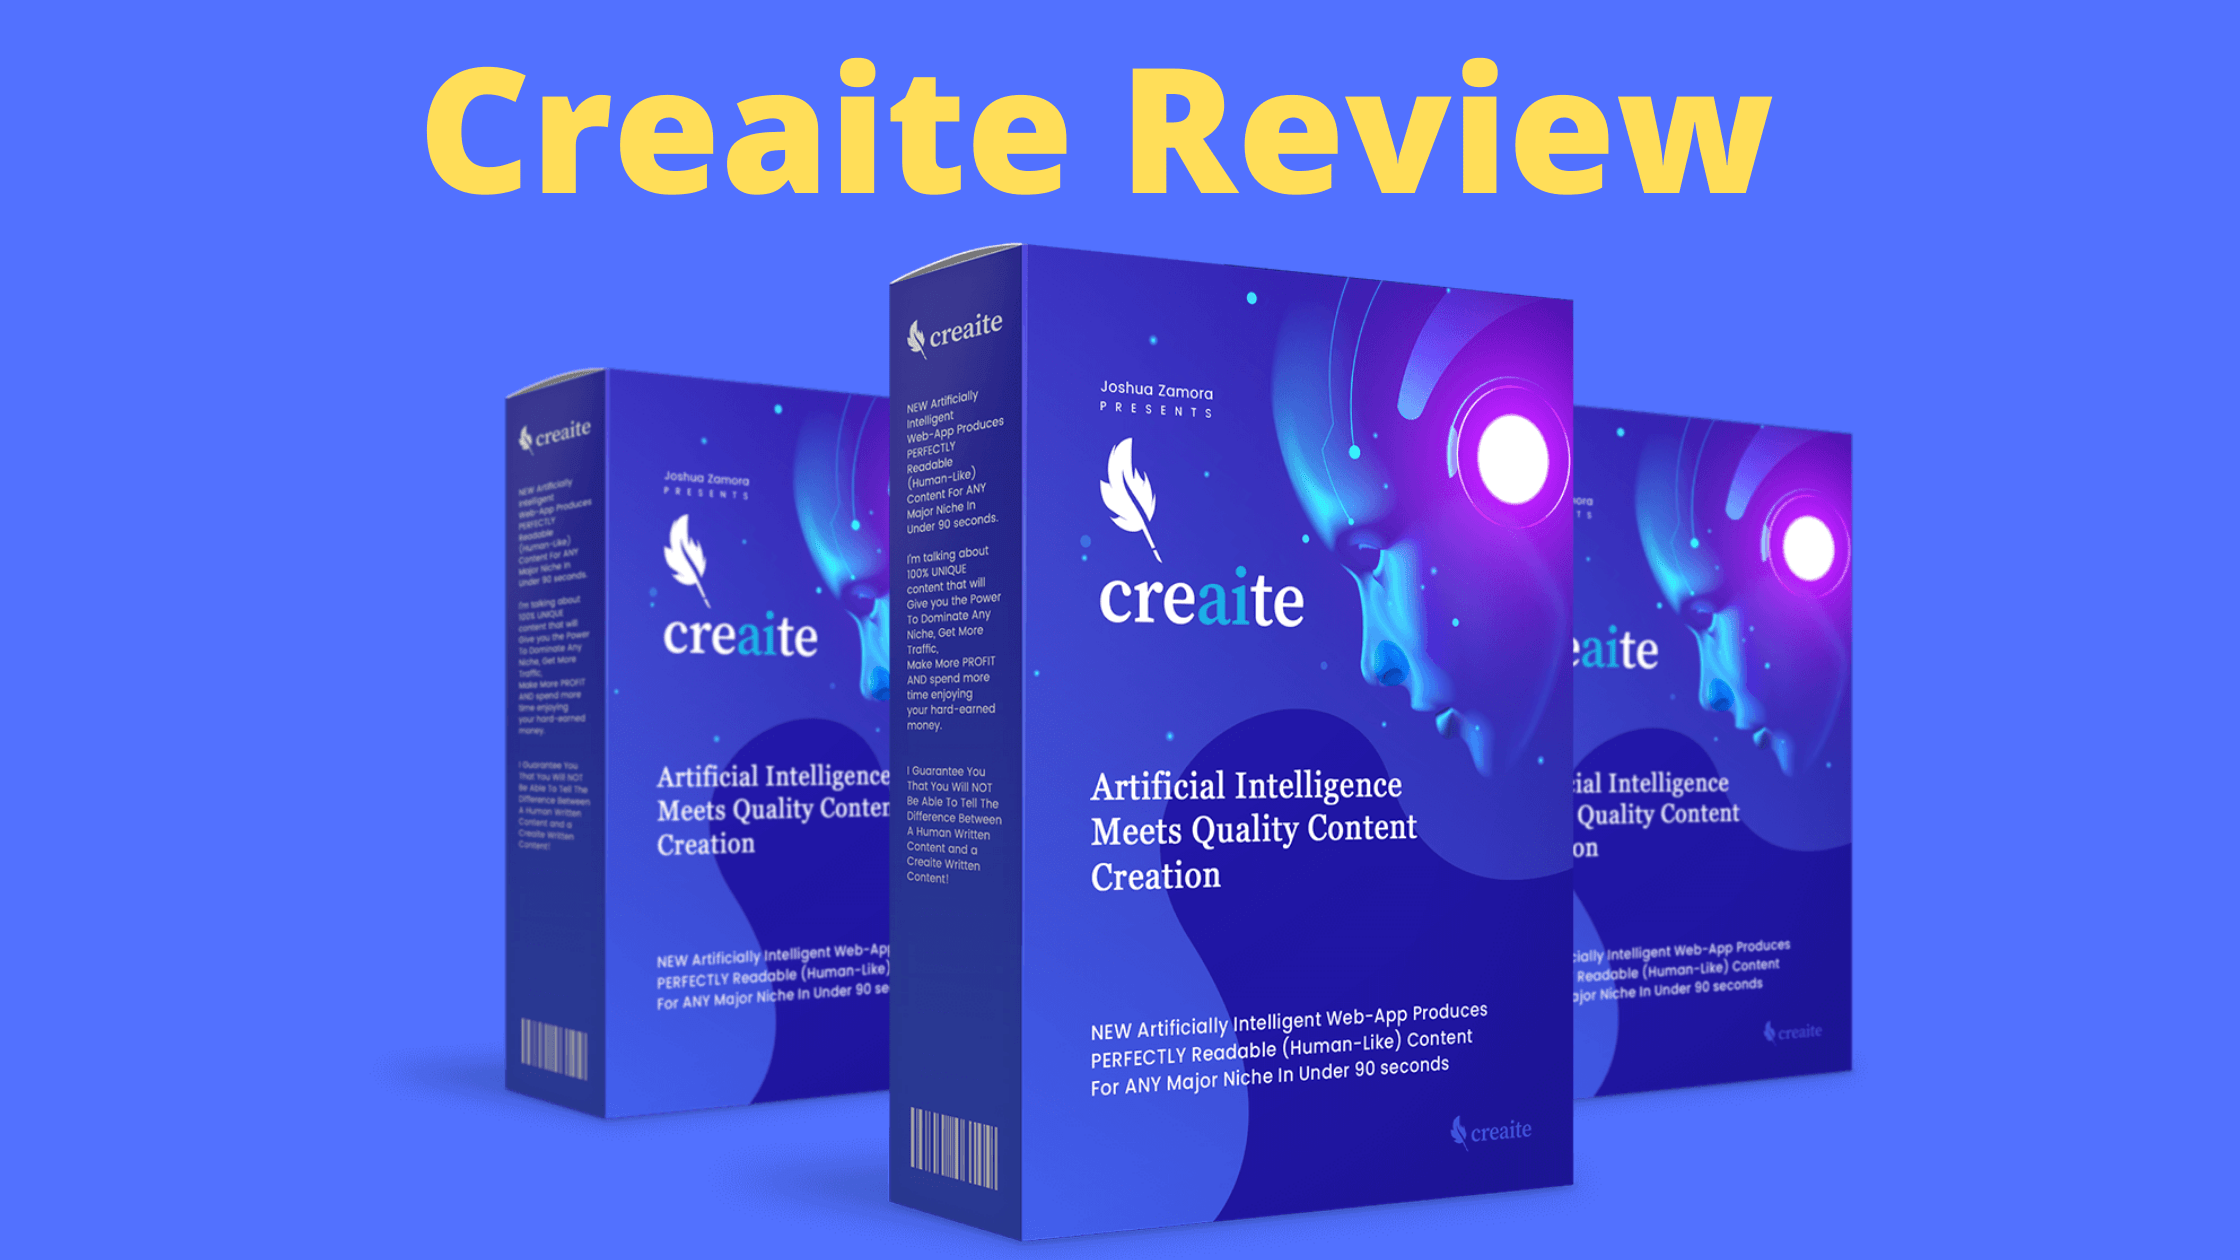 Creaite Review